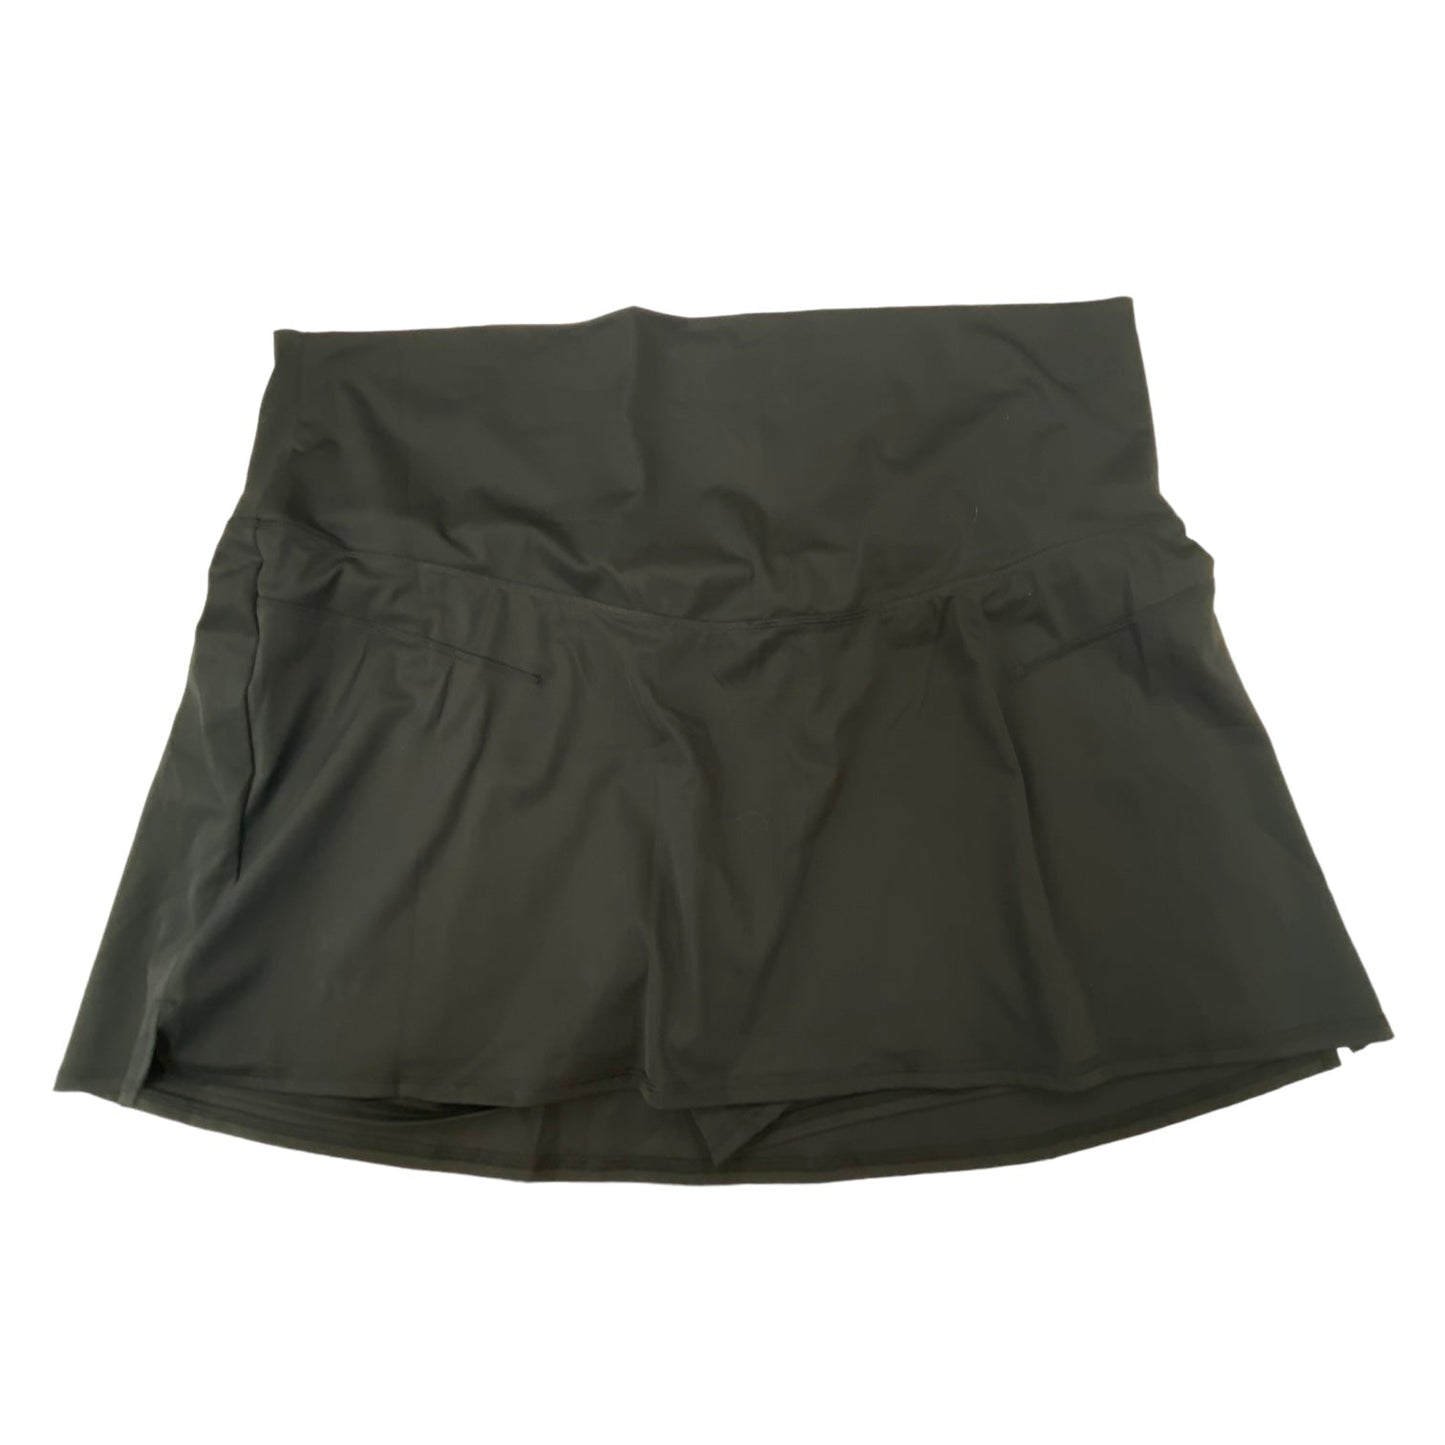 Maternity Athletic Skirt Skort By Old Navy  Size: Xxl